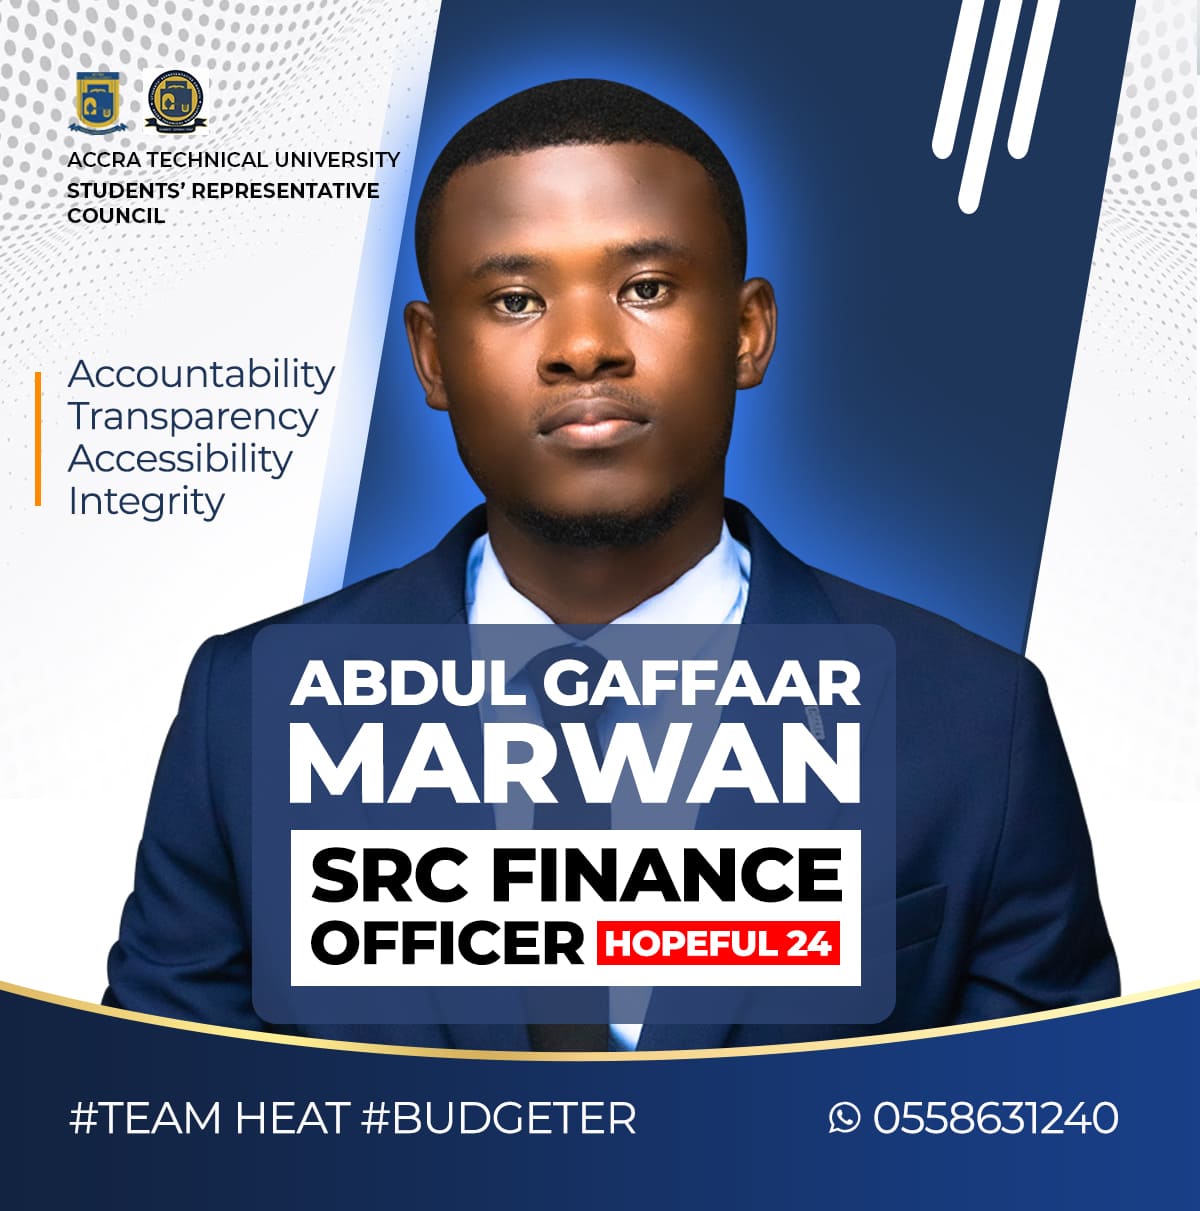 ABDUL-GAFFAAR-MARWAN-SRC-Finance-officer-hopeful-Team-Heat-Budgeter